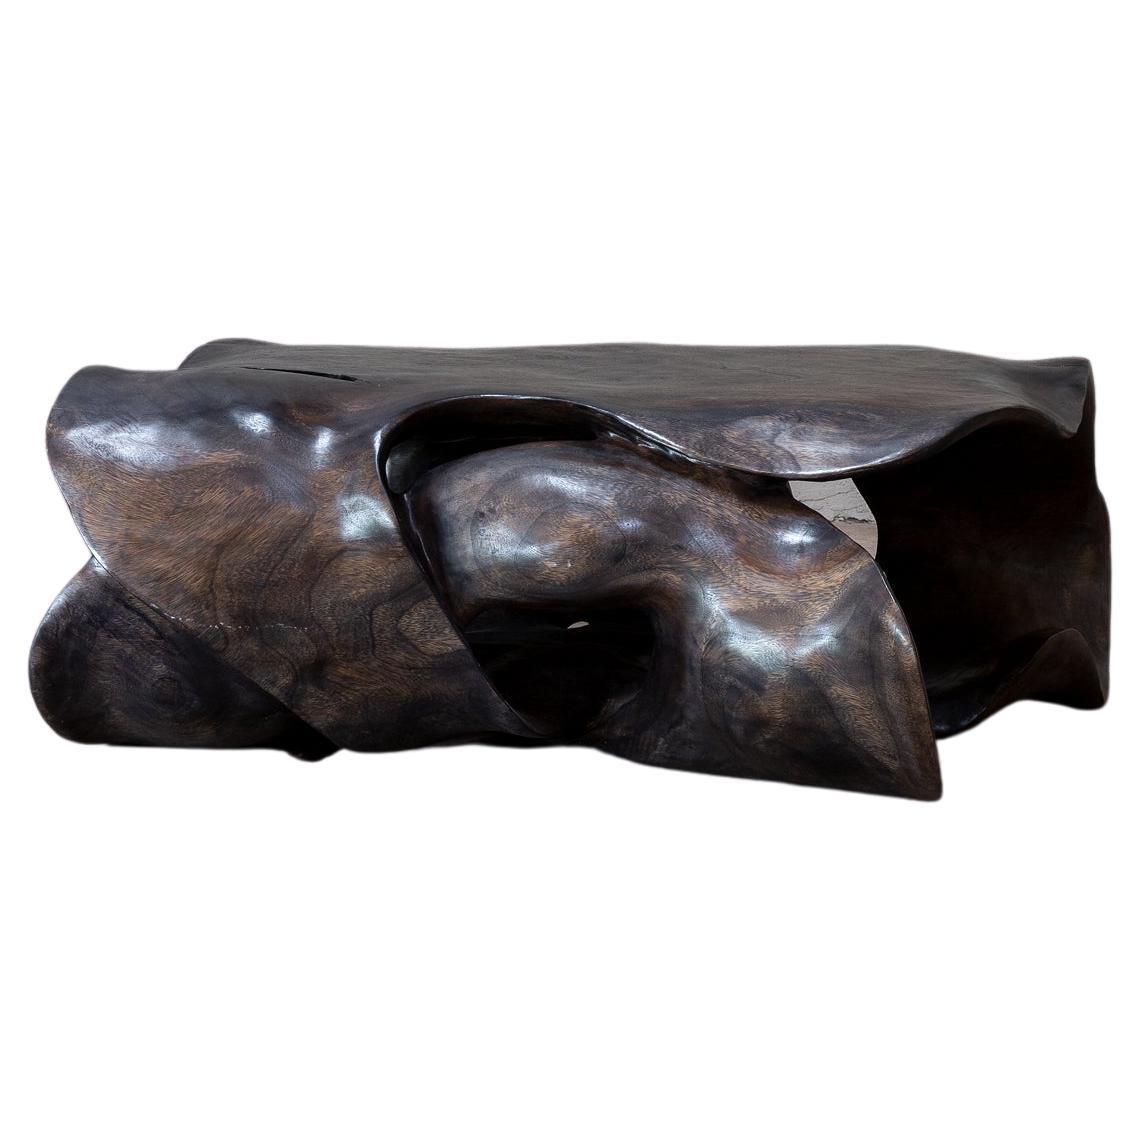 Nudo-Skulptur-Couchtisch von CEU Studio, vertreten von Tuleste Factory